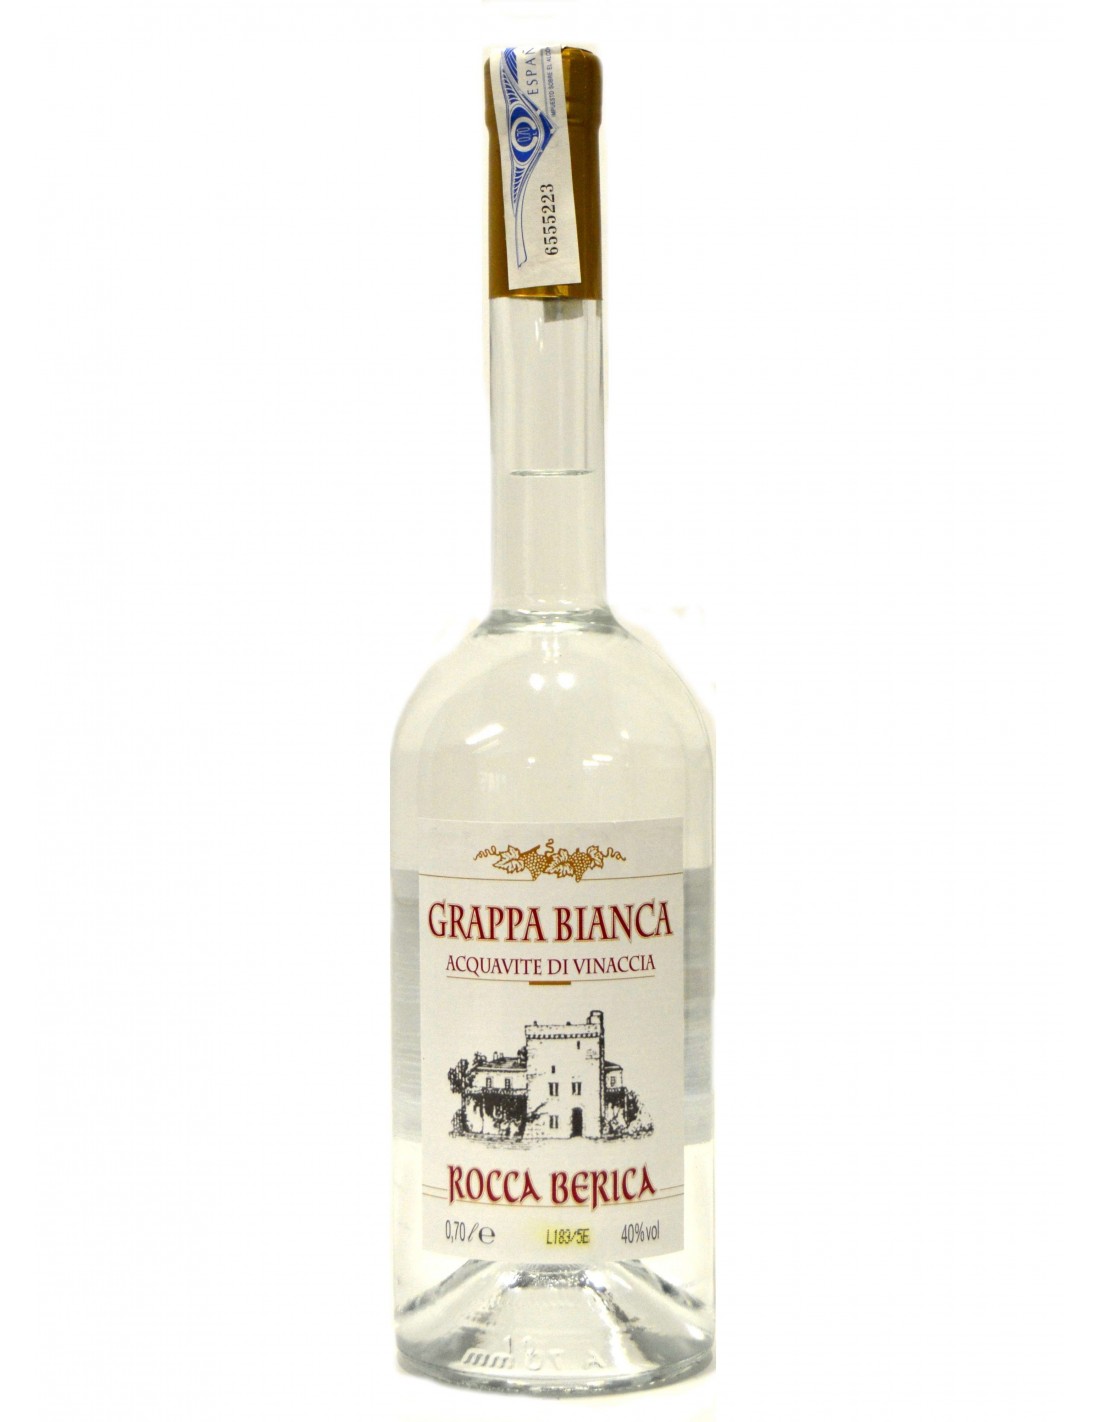 Bautura traditionala Grappa Bianca Rocca Berica 40% alc., 0.7L, Italia alcooldiscount.ro